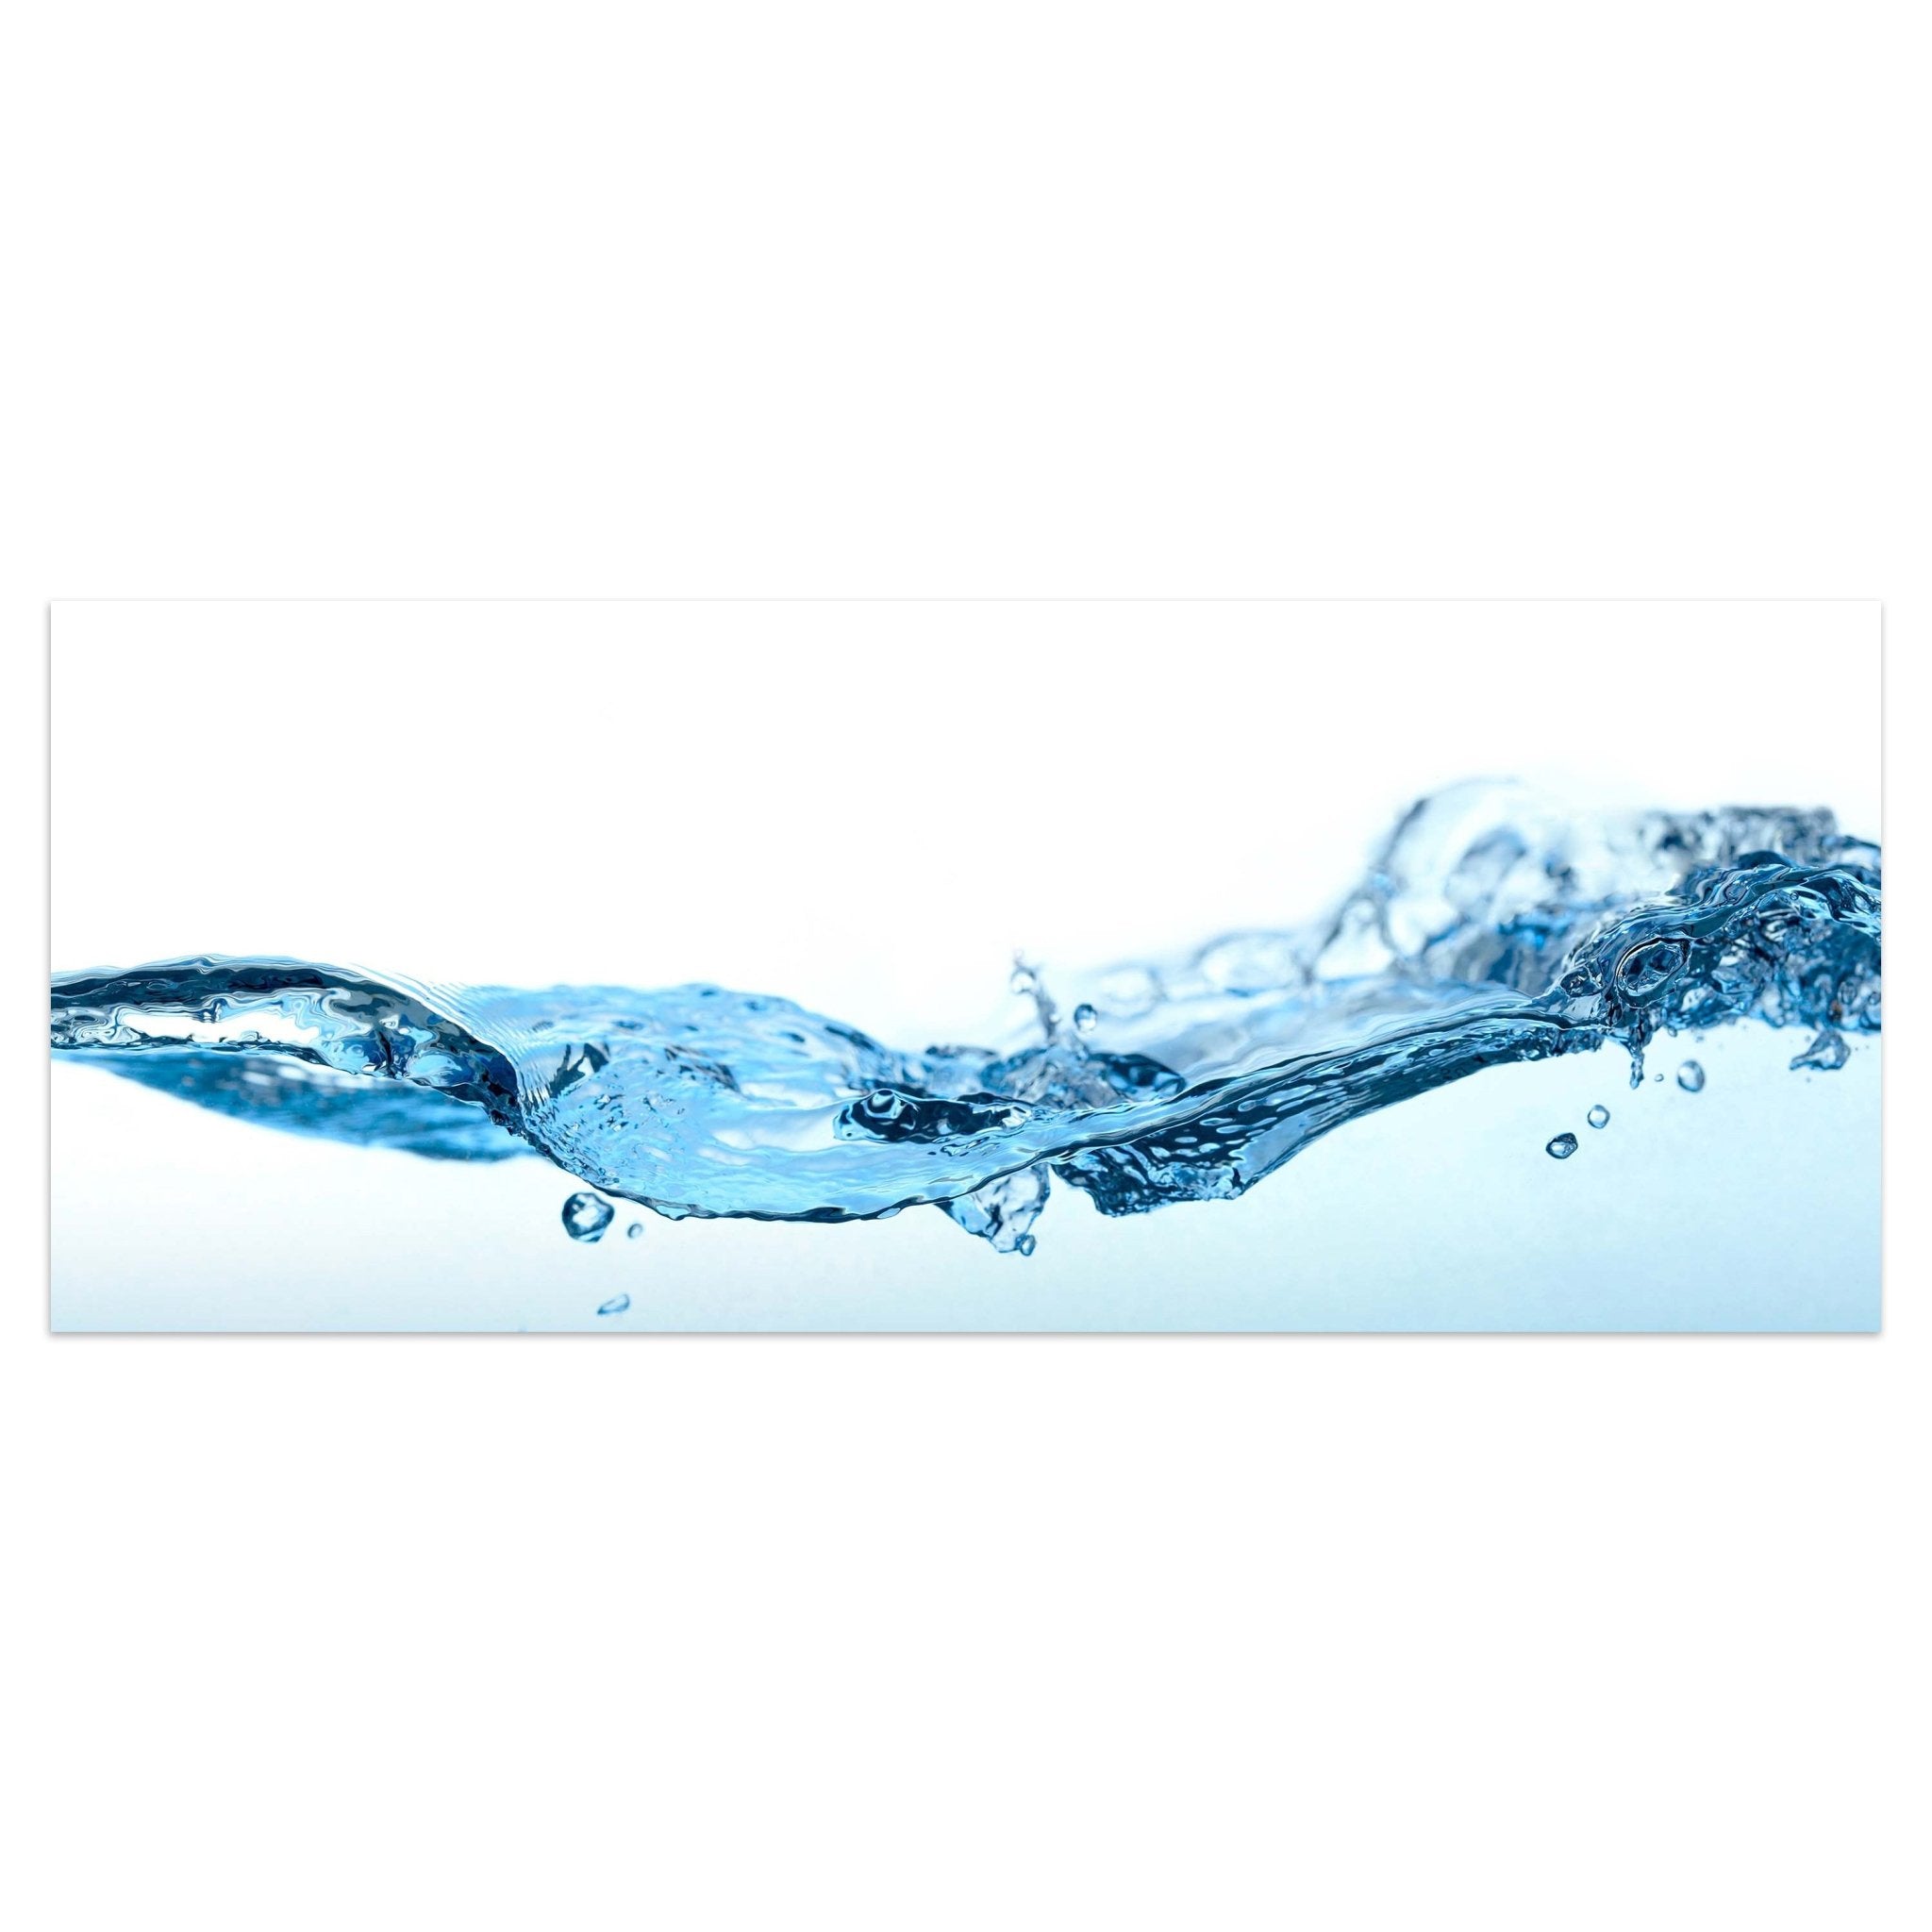 Leinwandbild Wasseroberfläche Natur M0270 kaufen - Bild 1